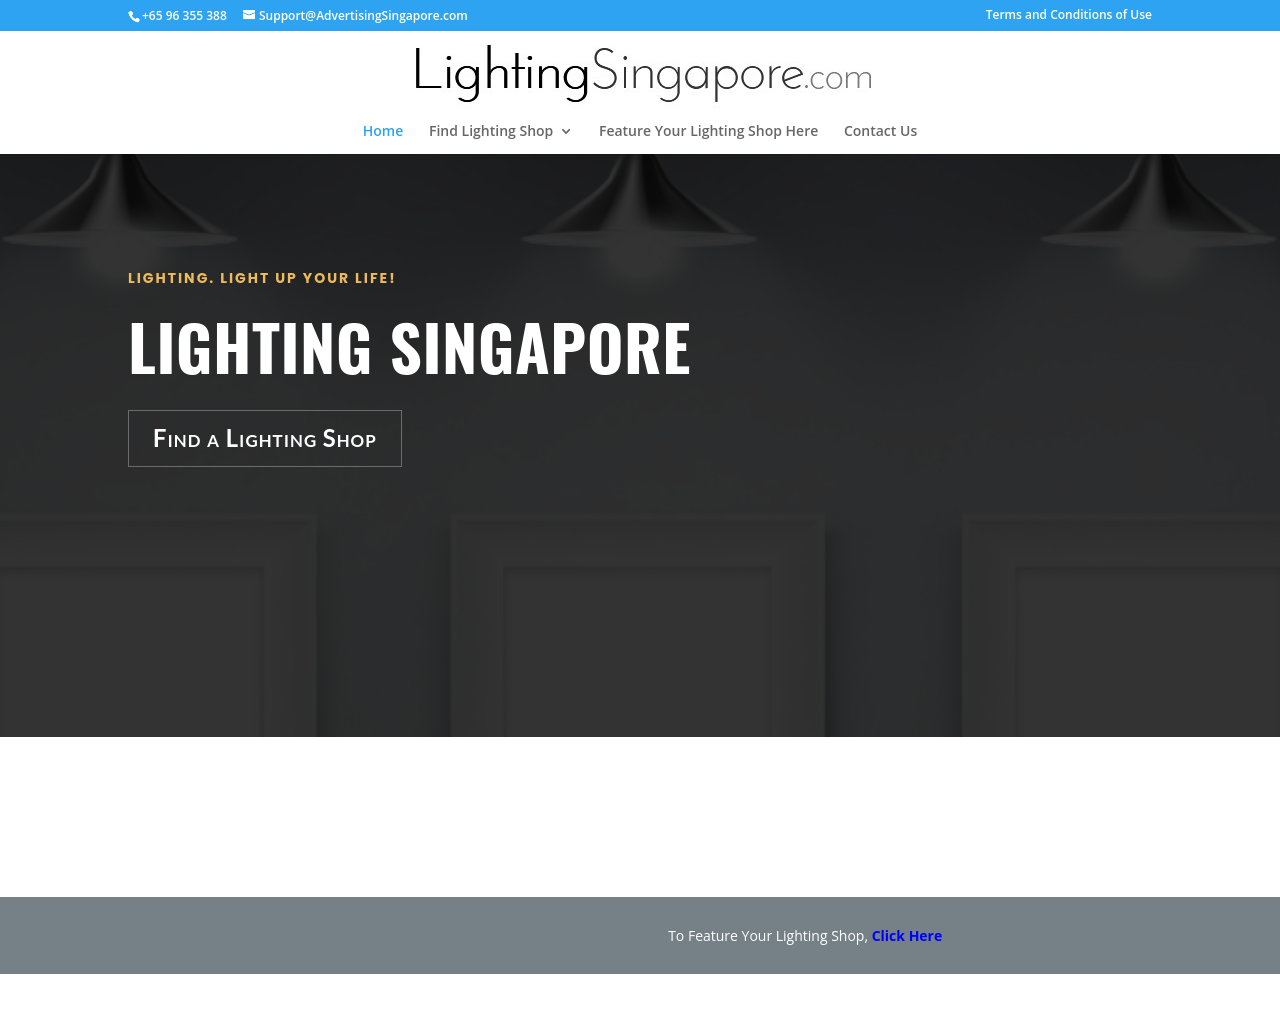 lightingsingapore.com